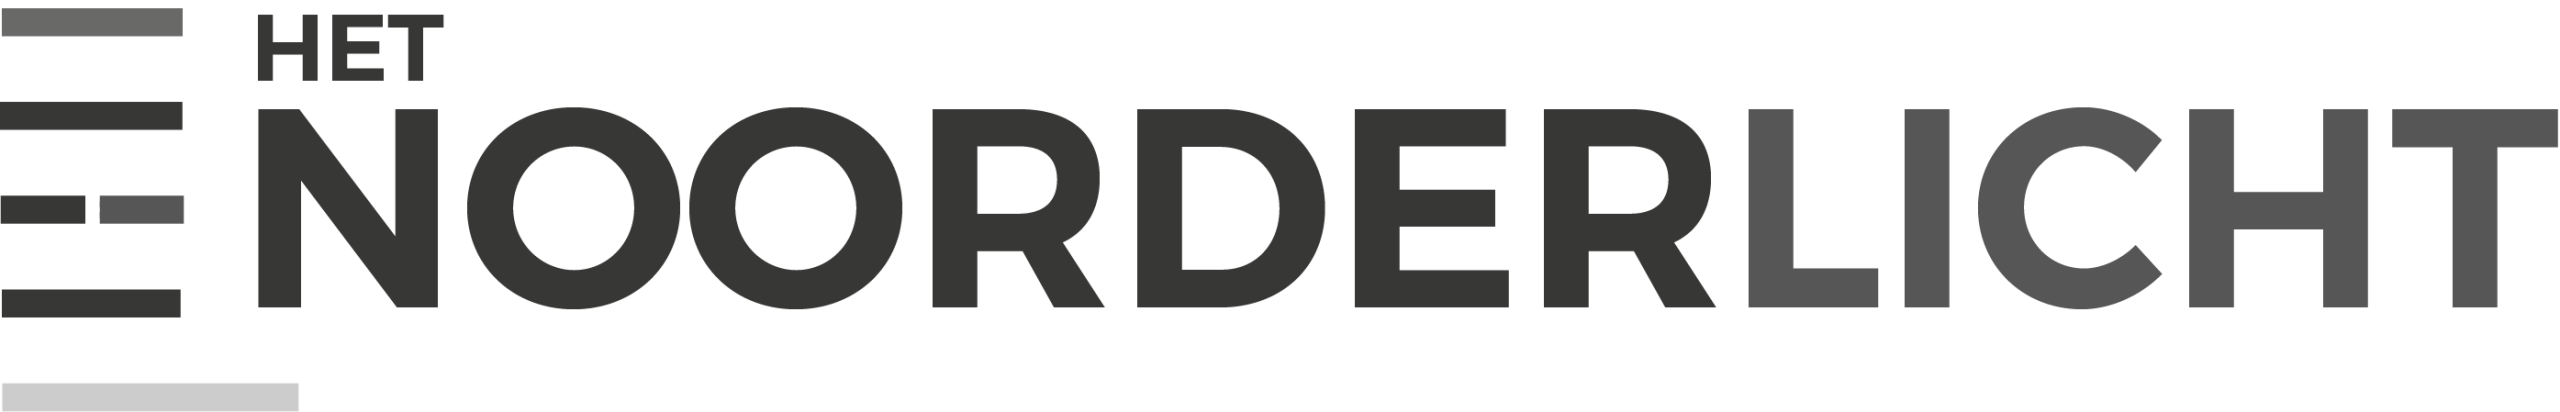 Het Noorderlicht — Bedrijvencentrum in Pelt Logo